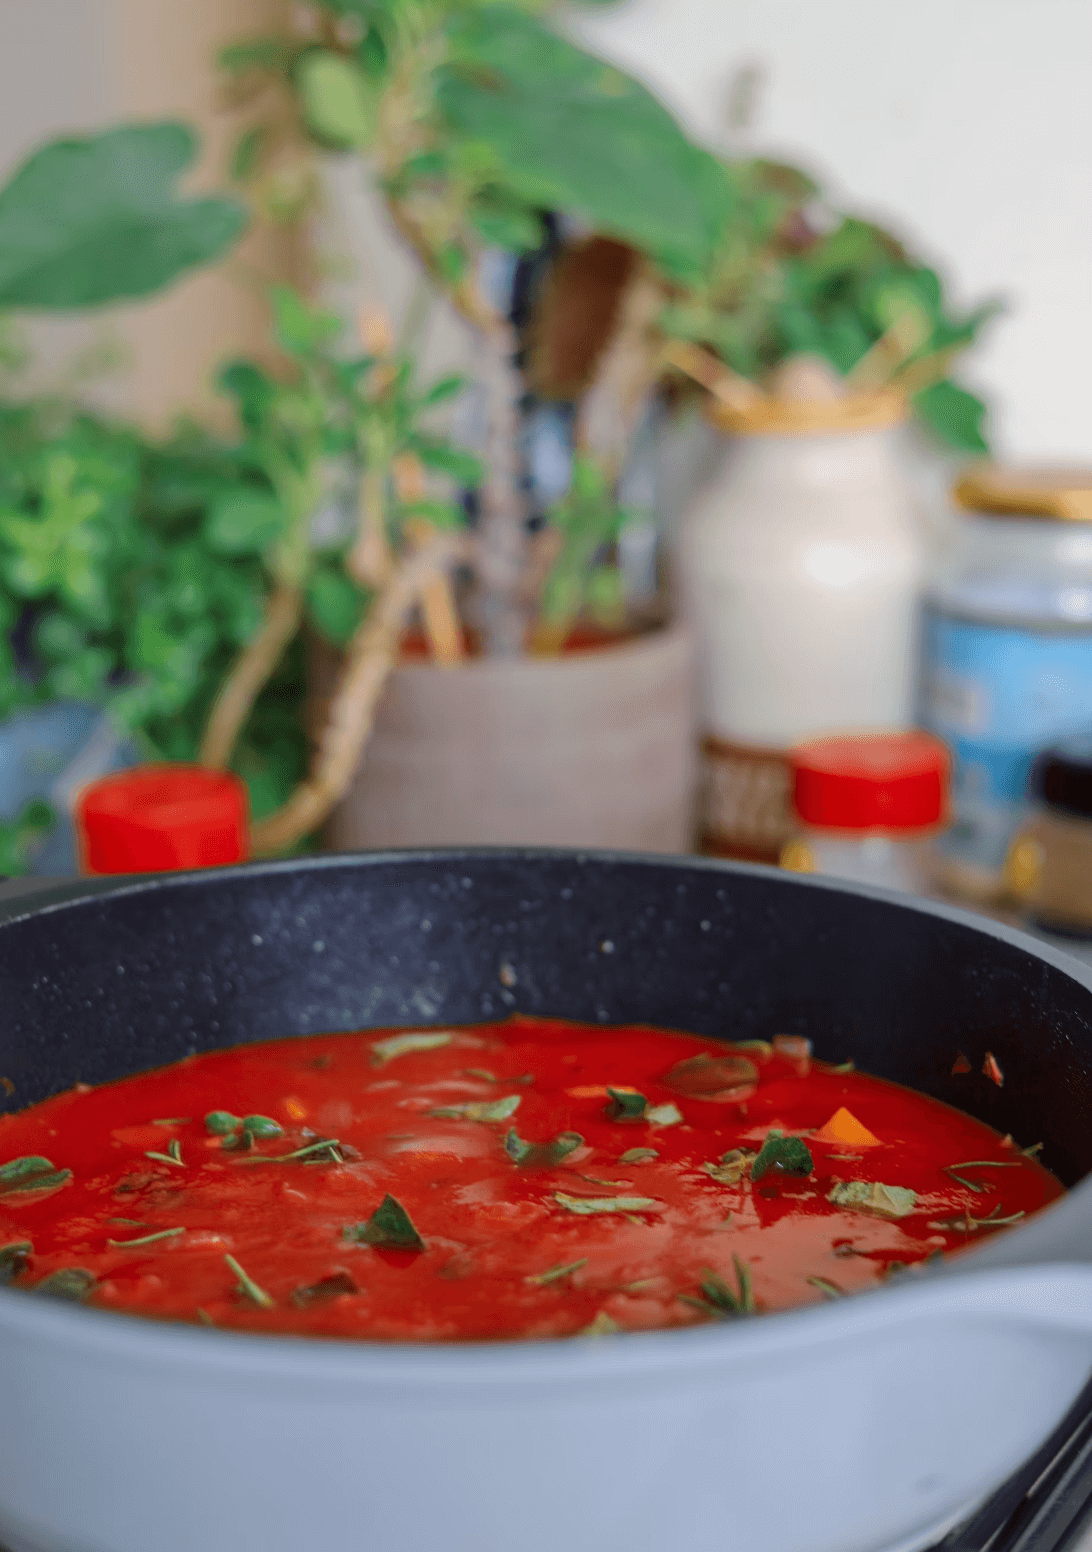 En hvit skål med dyp rød tomatsuppe med basilikum på et bord med planter i bakgrunnen.